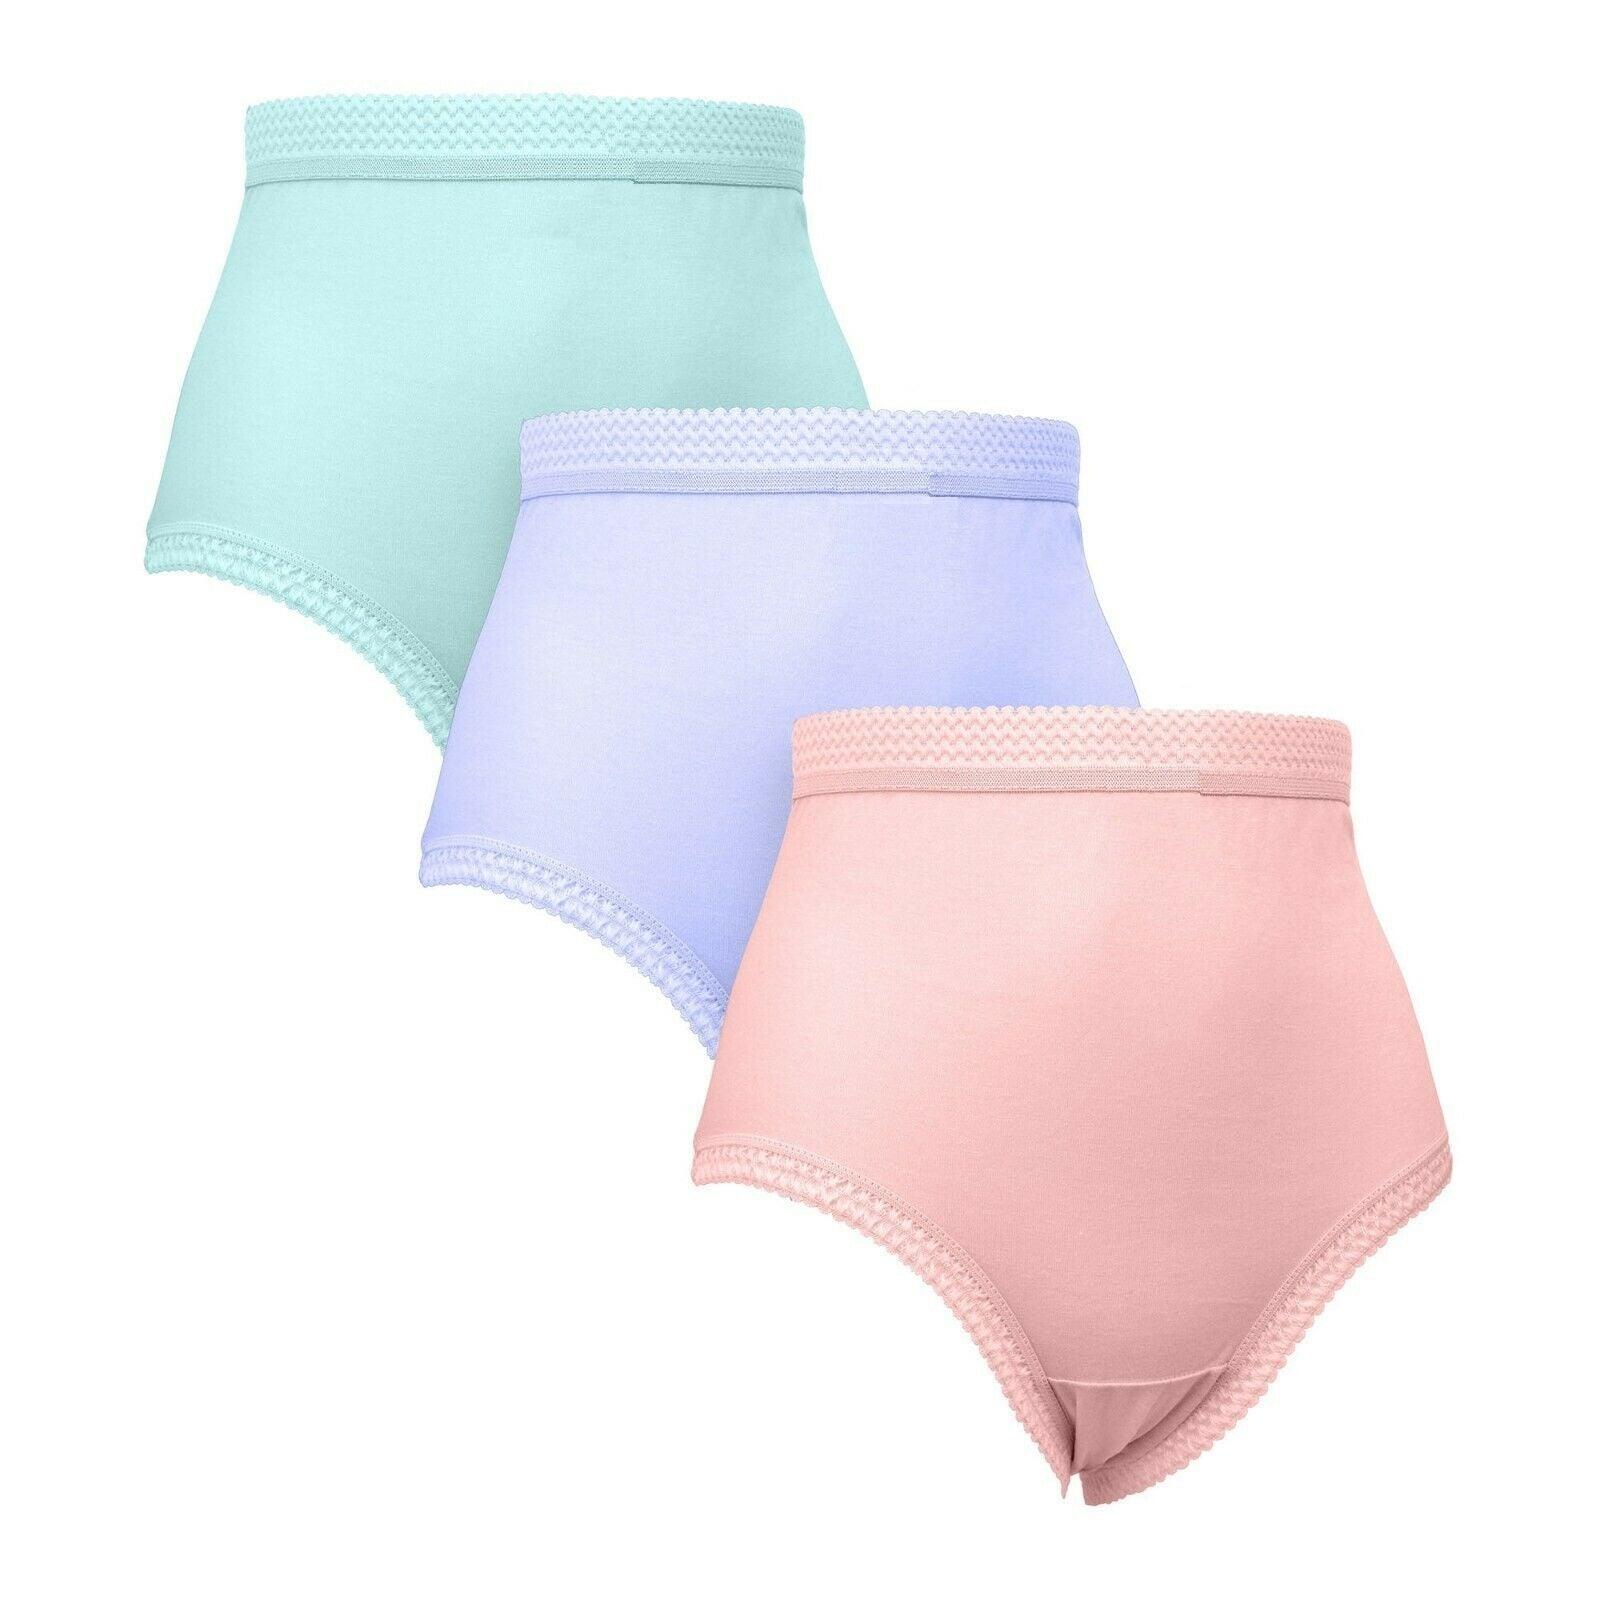 Ladies Underwear Knickers Briefs Underpants 3 Pairs 100% Cotton